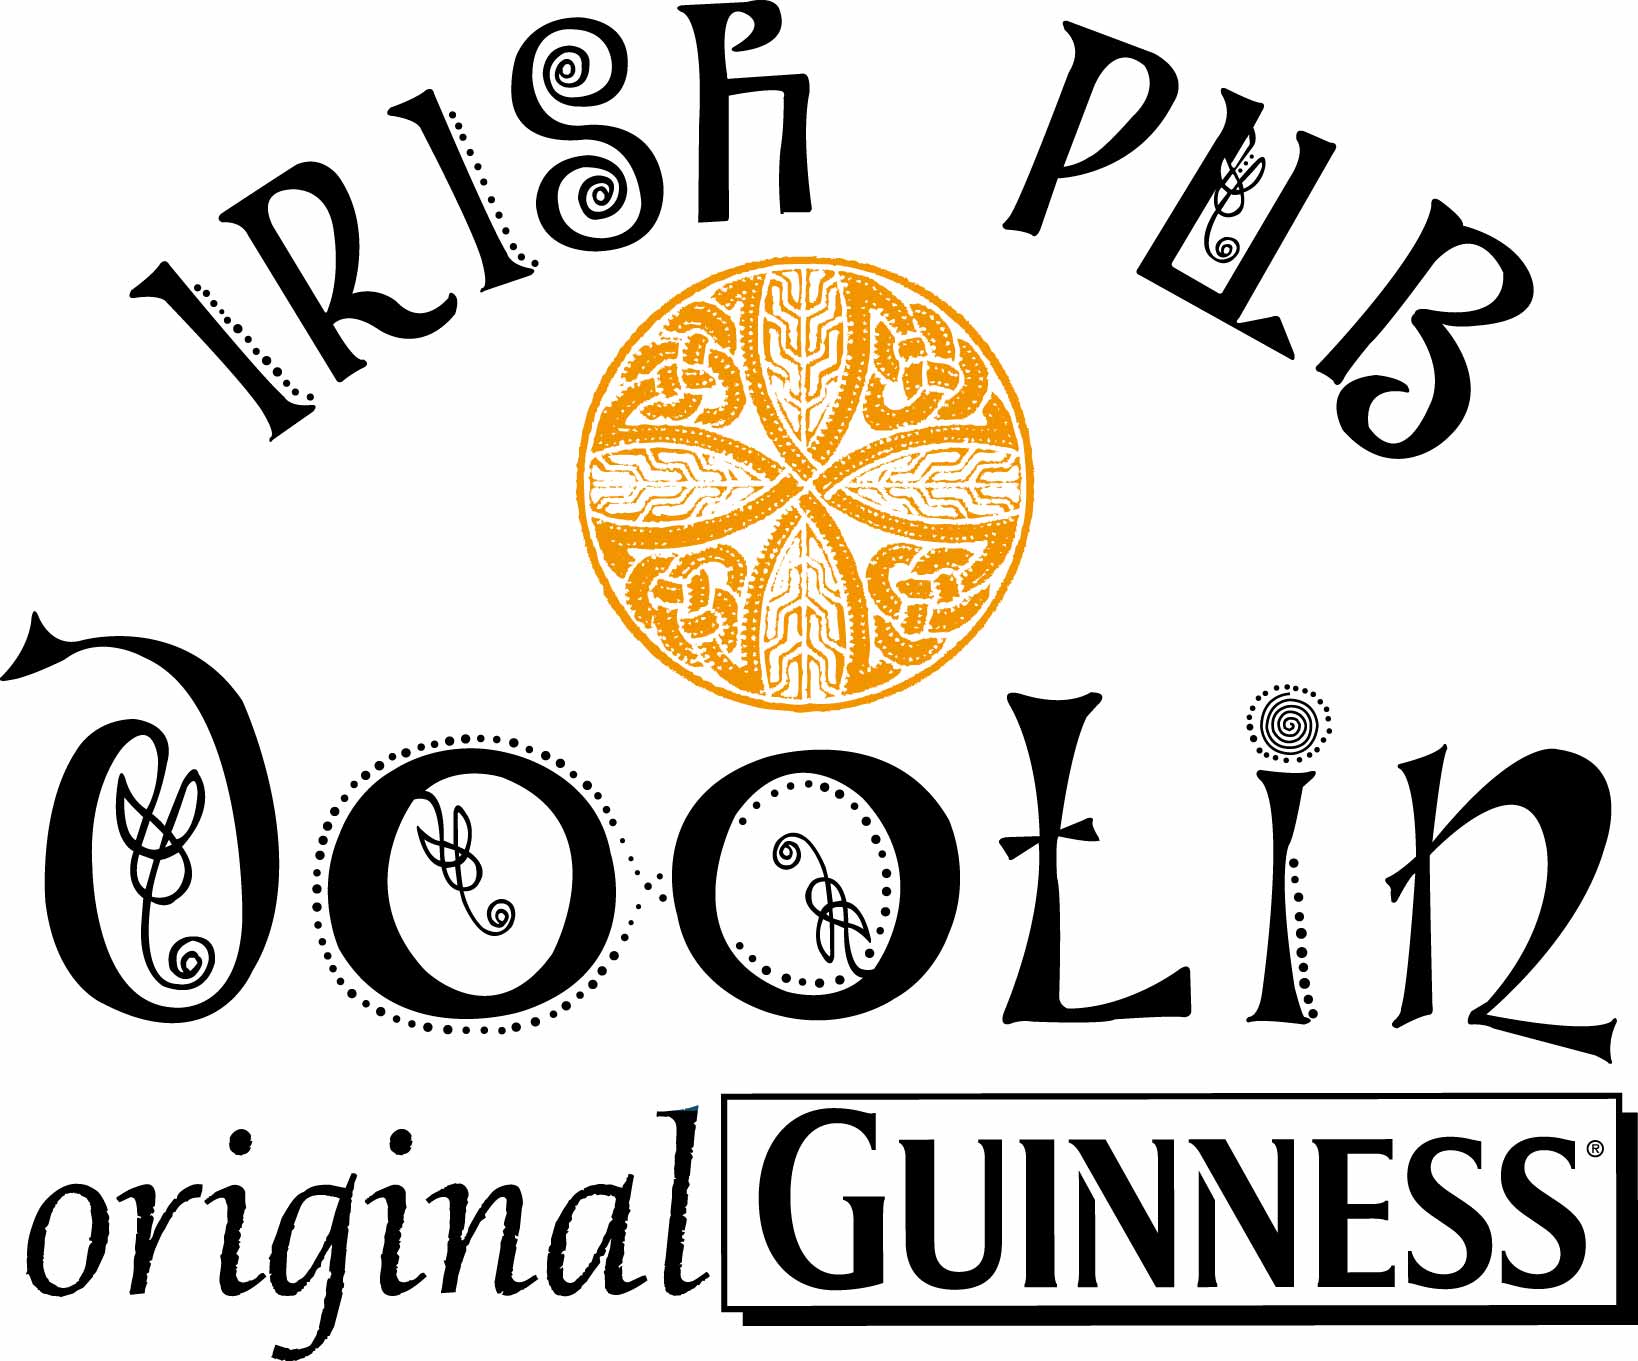 San Patrick’s Day all’irish Pub Doolin